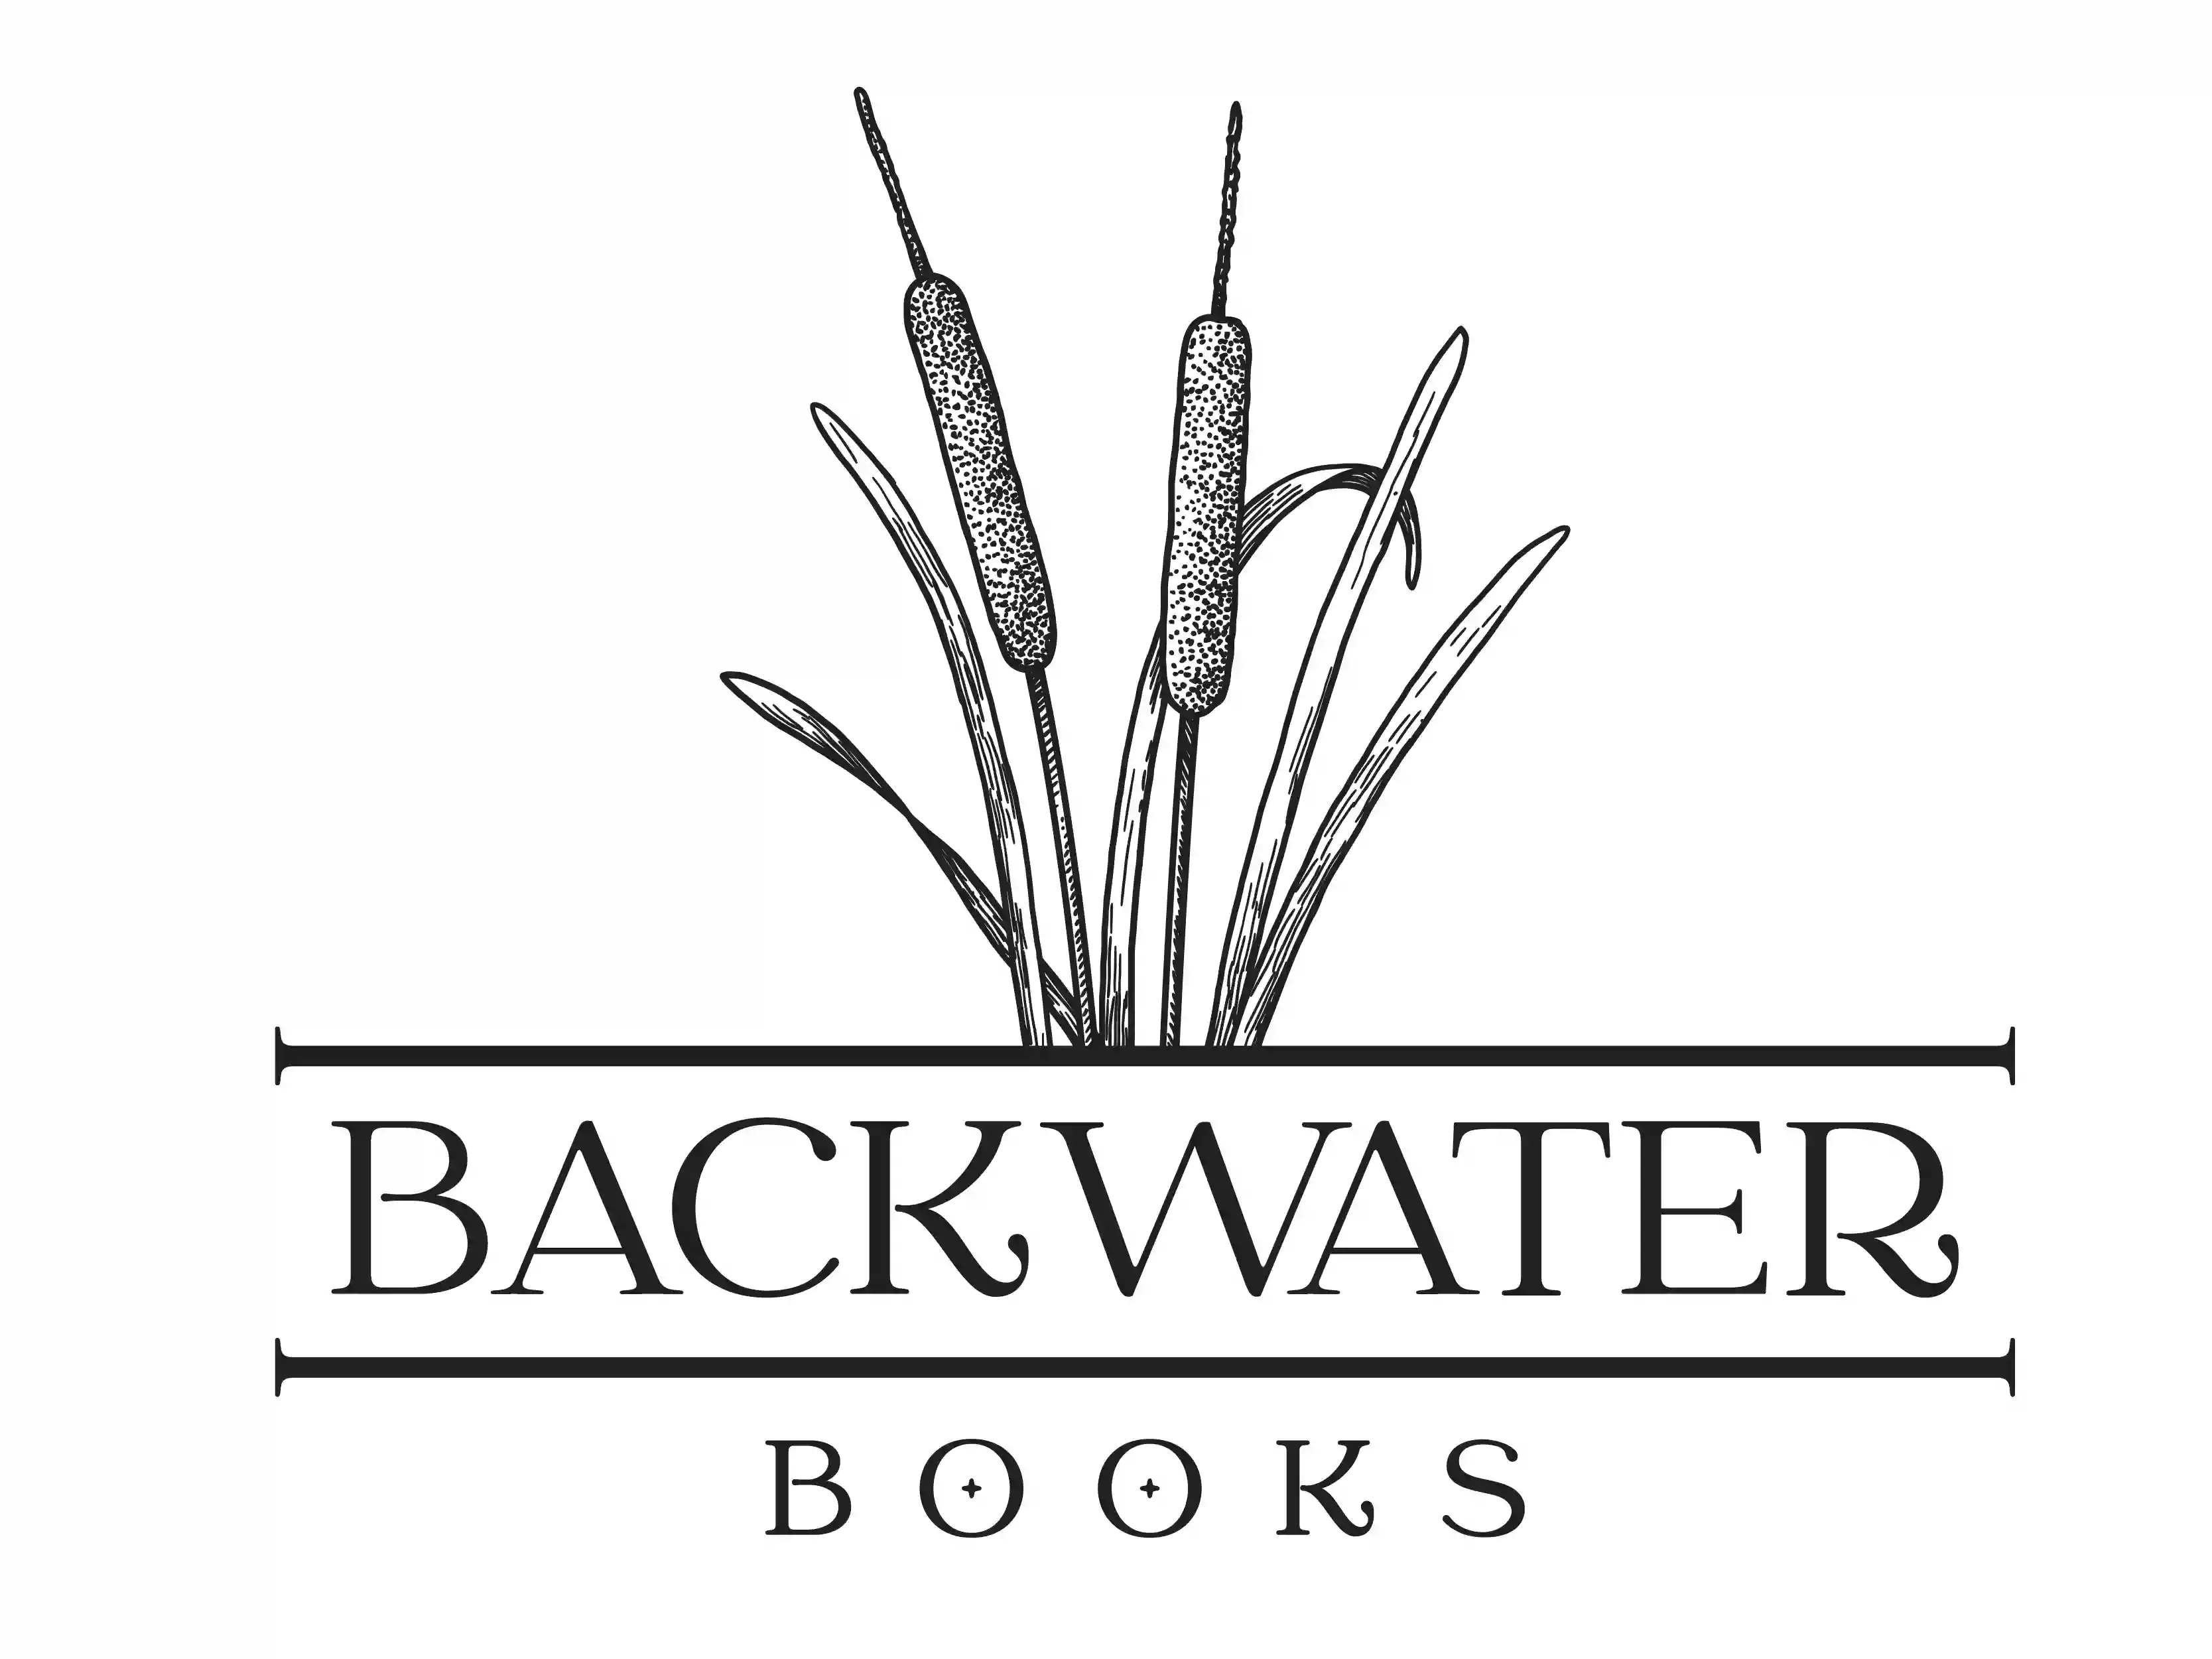 Backwater Books